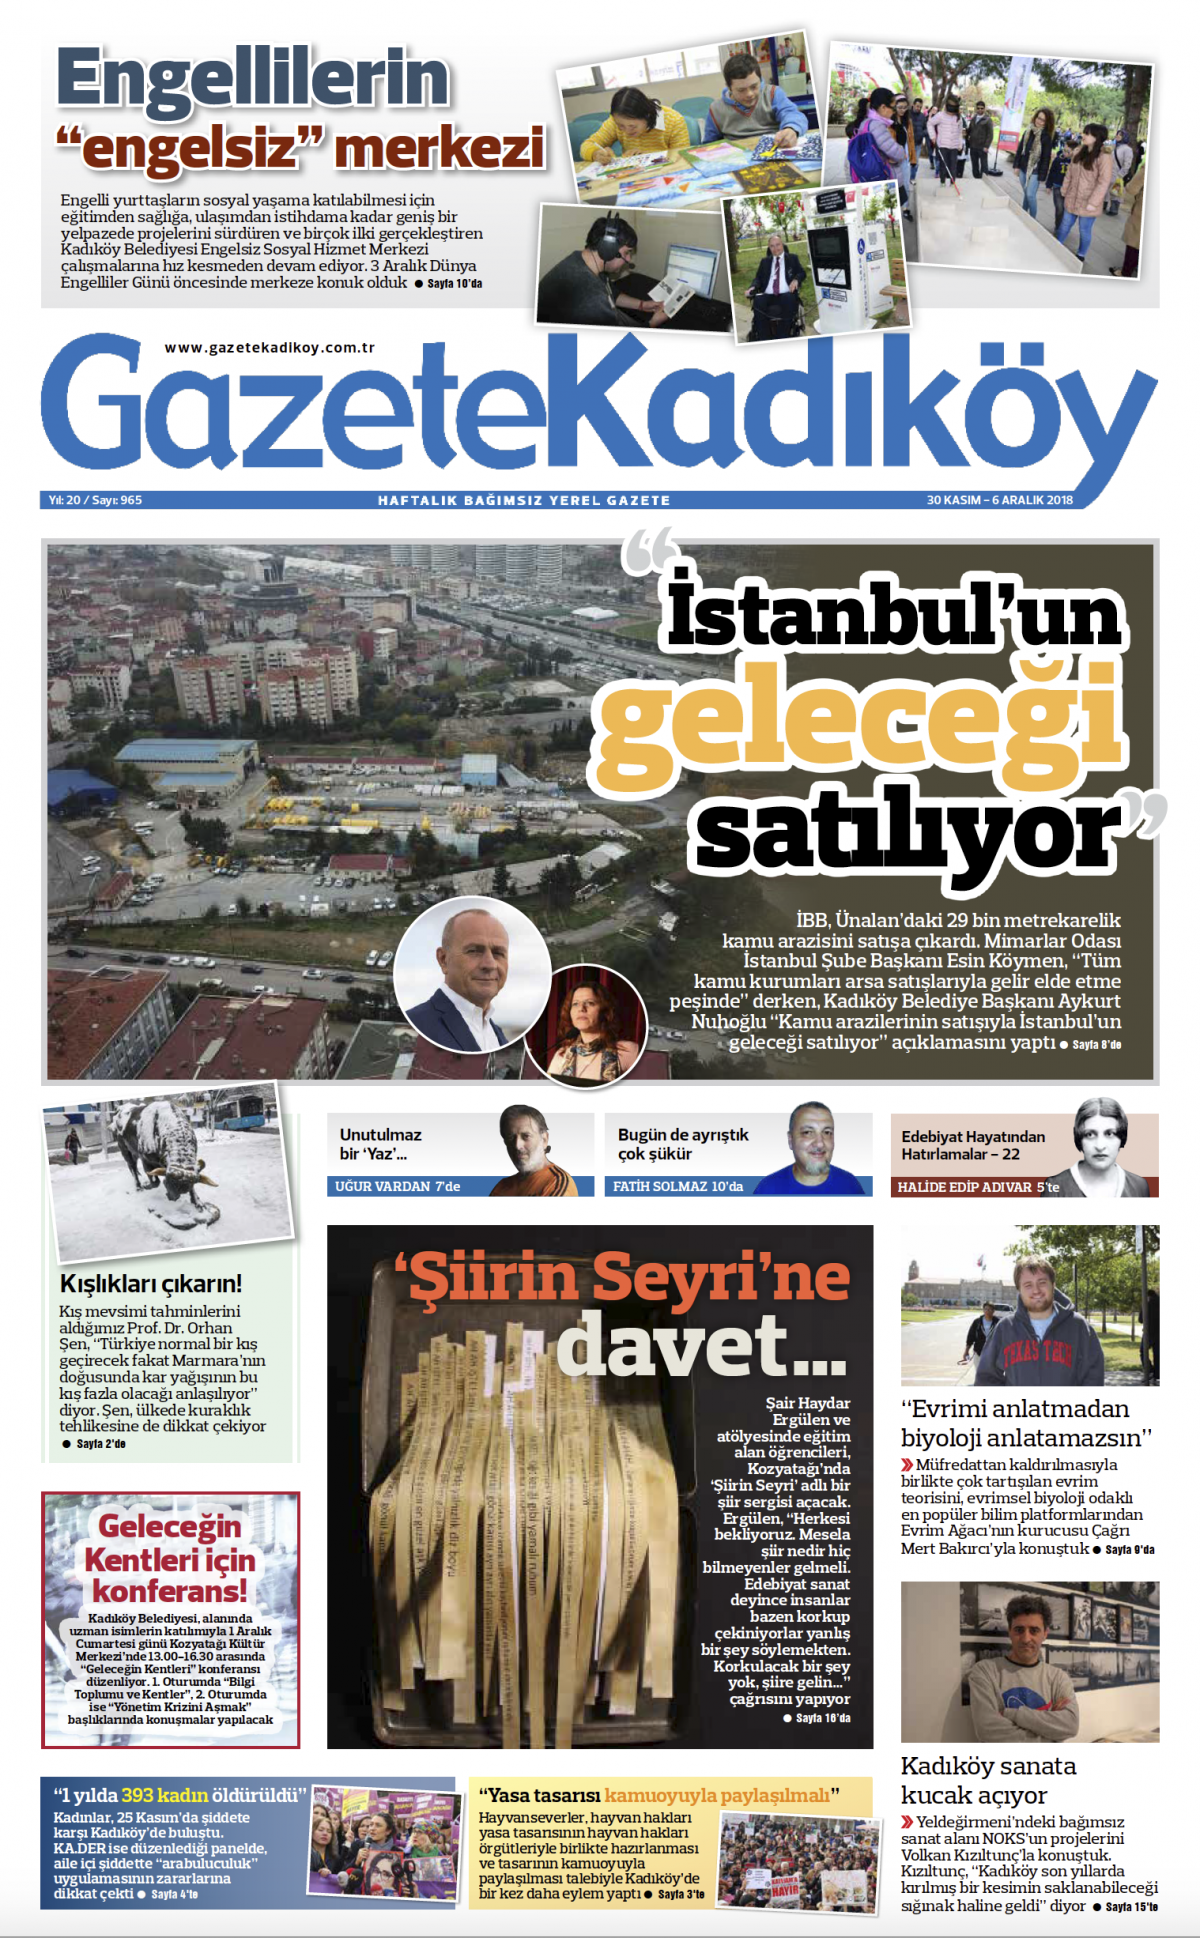 Gazete Kadıköy - 965. SAYI